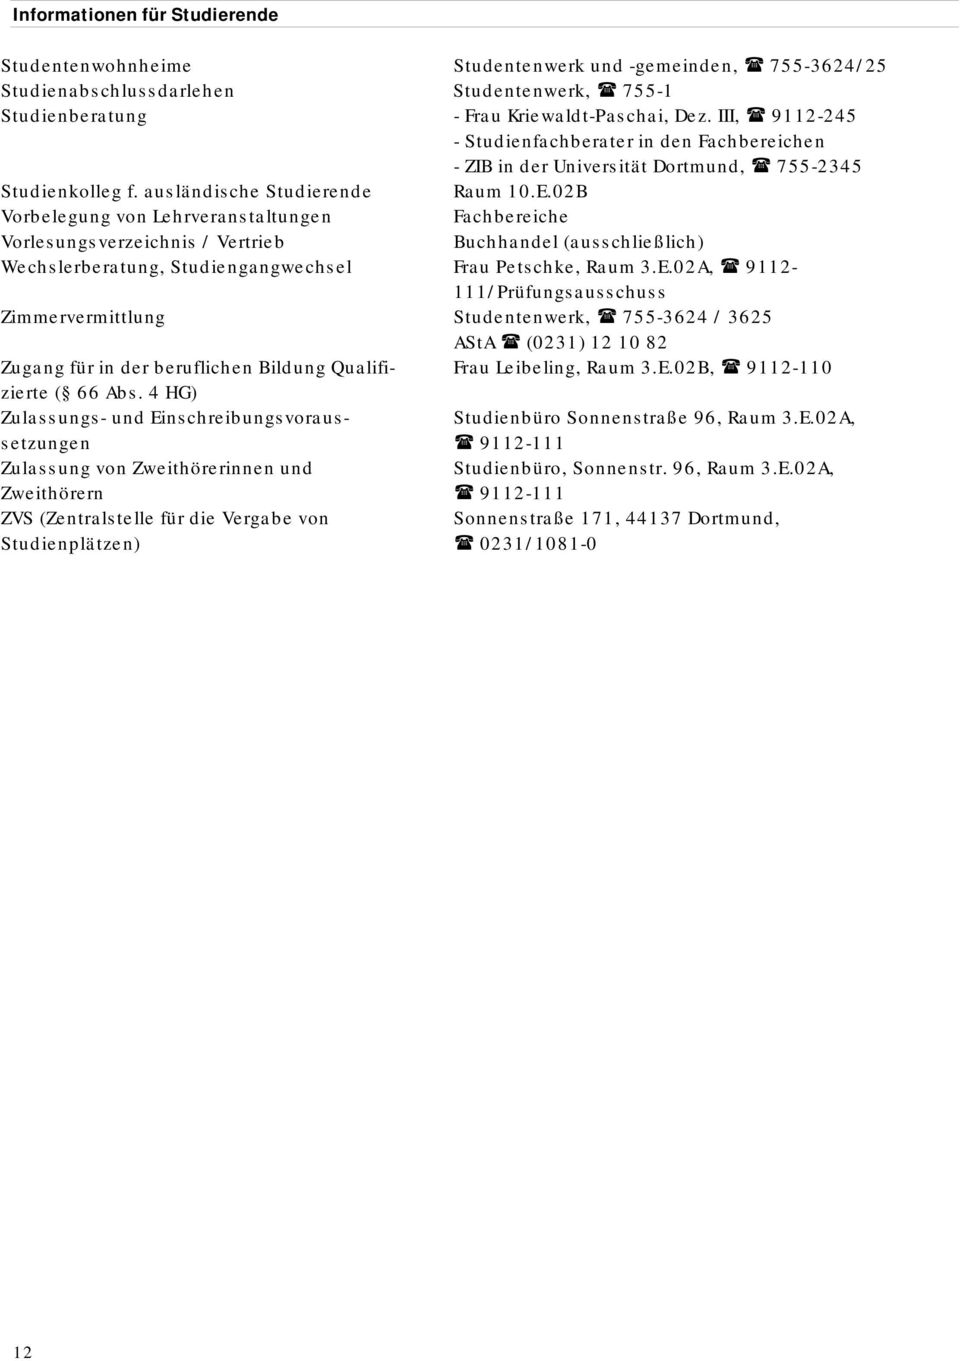 02B Vorbelegung von Lehrveranstaltungen Fachbereiche Vorlesungsverzeichnis / Vertrieb Buchhandel (ausschließlich) Wechslerberatung, Studiengangwechsel Frau Petschke, Raum 3.E.